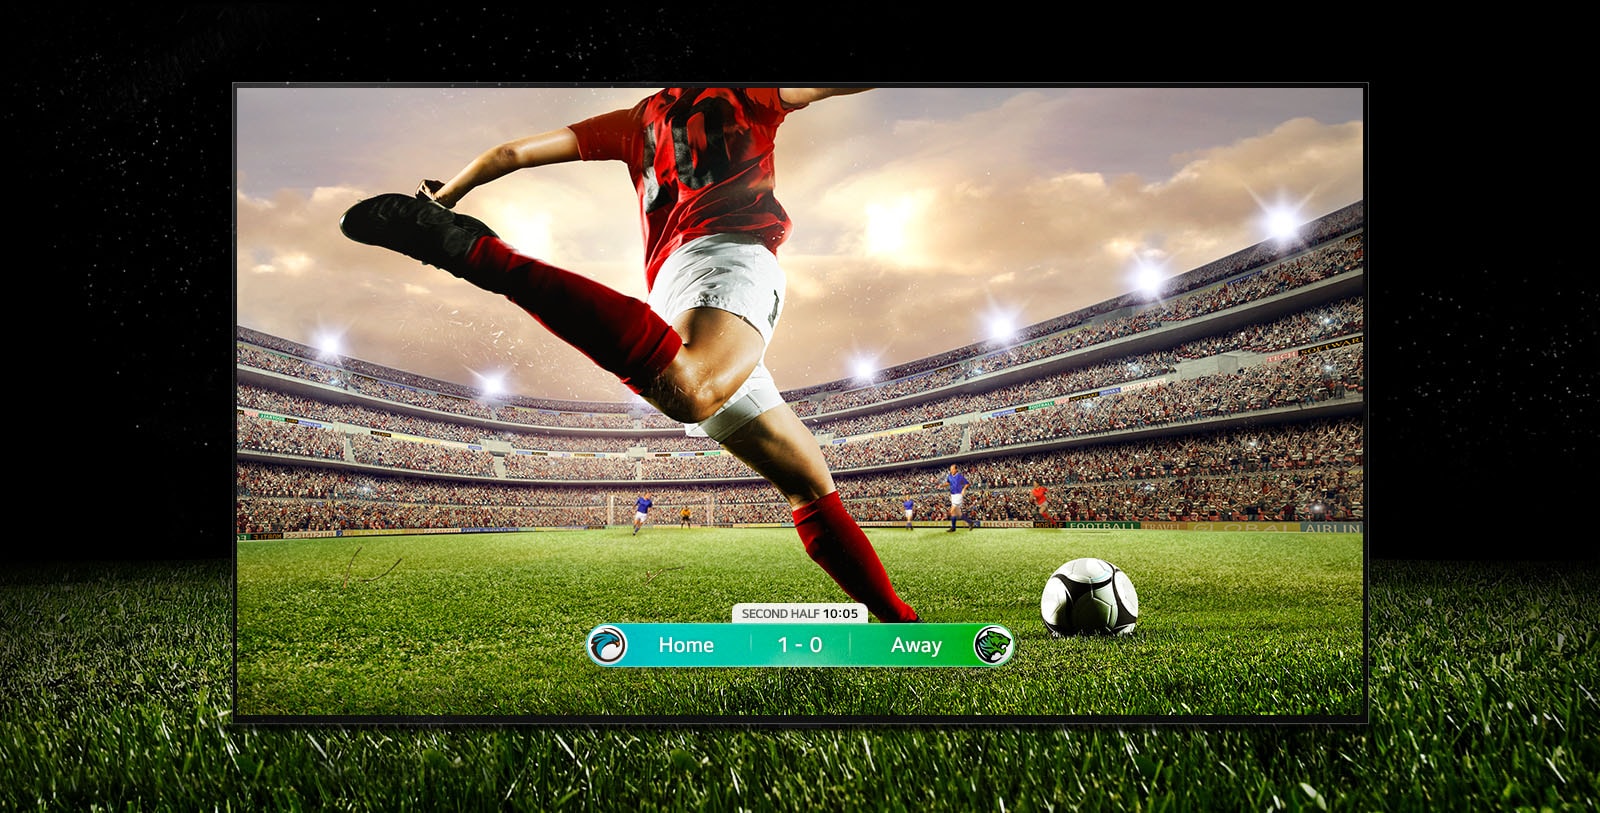 صورة لشاشة العرض تُظهر مباراة كرة قدم بها لاعب يرتدي شريطًا أحمر يوشك أن يركل الكرة في الإستاد. تظهر نتيجة المباراة في الجزء السفلي من الشاشة. يمتد العشب الأخضر من الملعب إلى ما وراء الشاشة وصولاً إلى الخلفية السوداء.